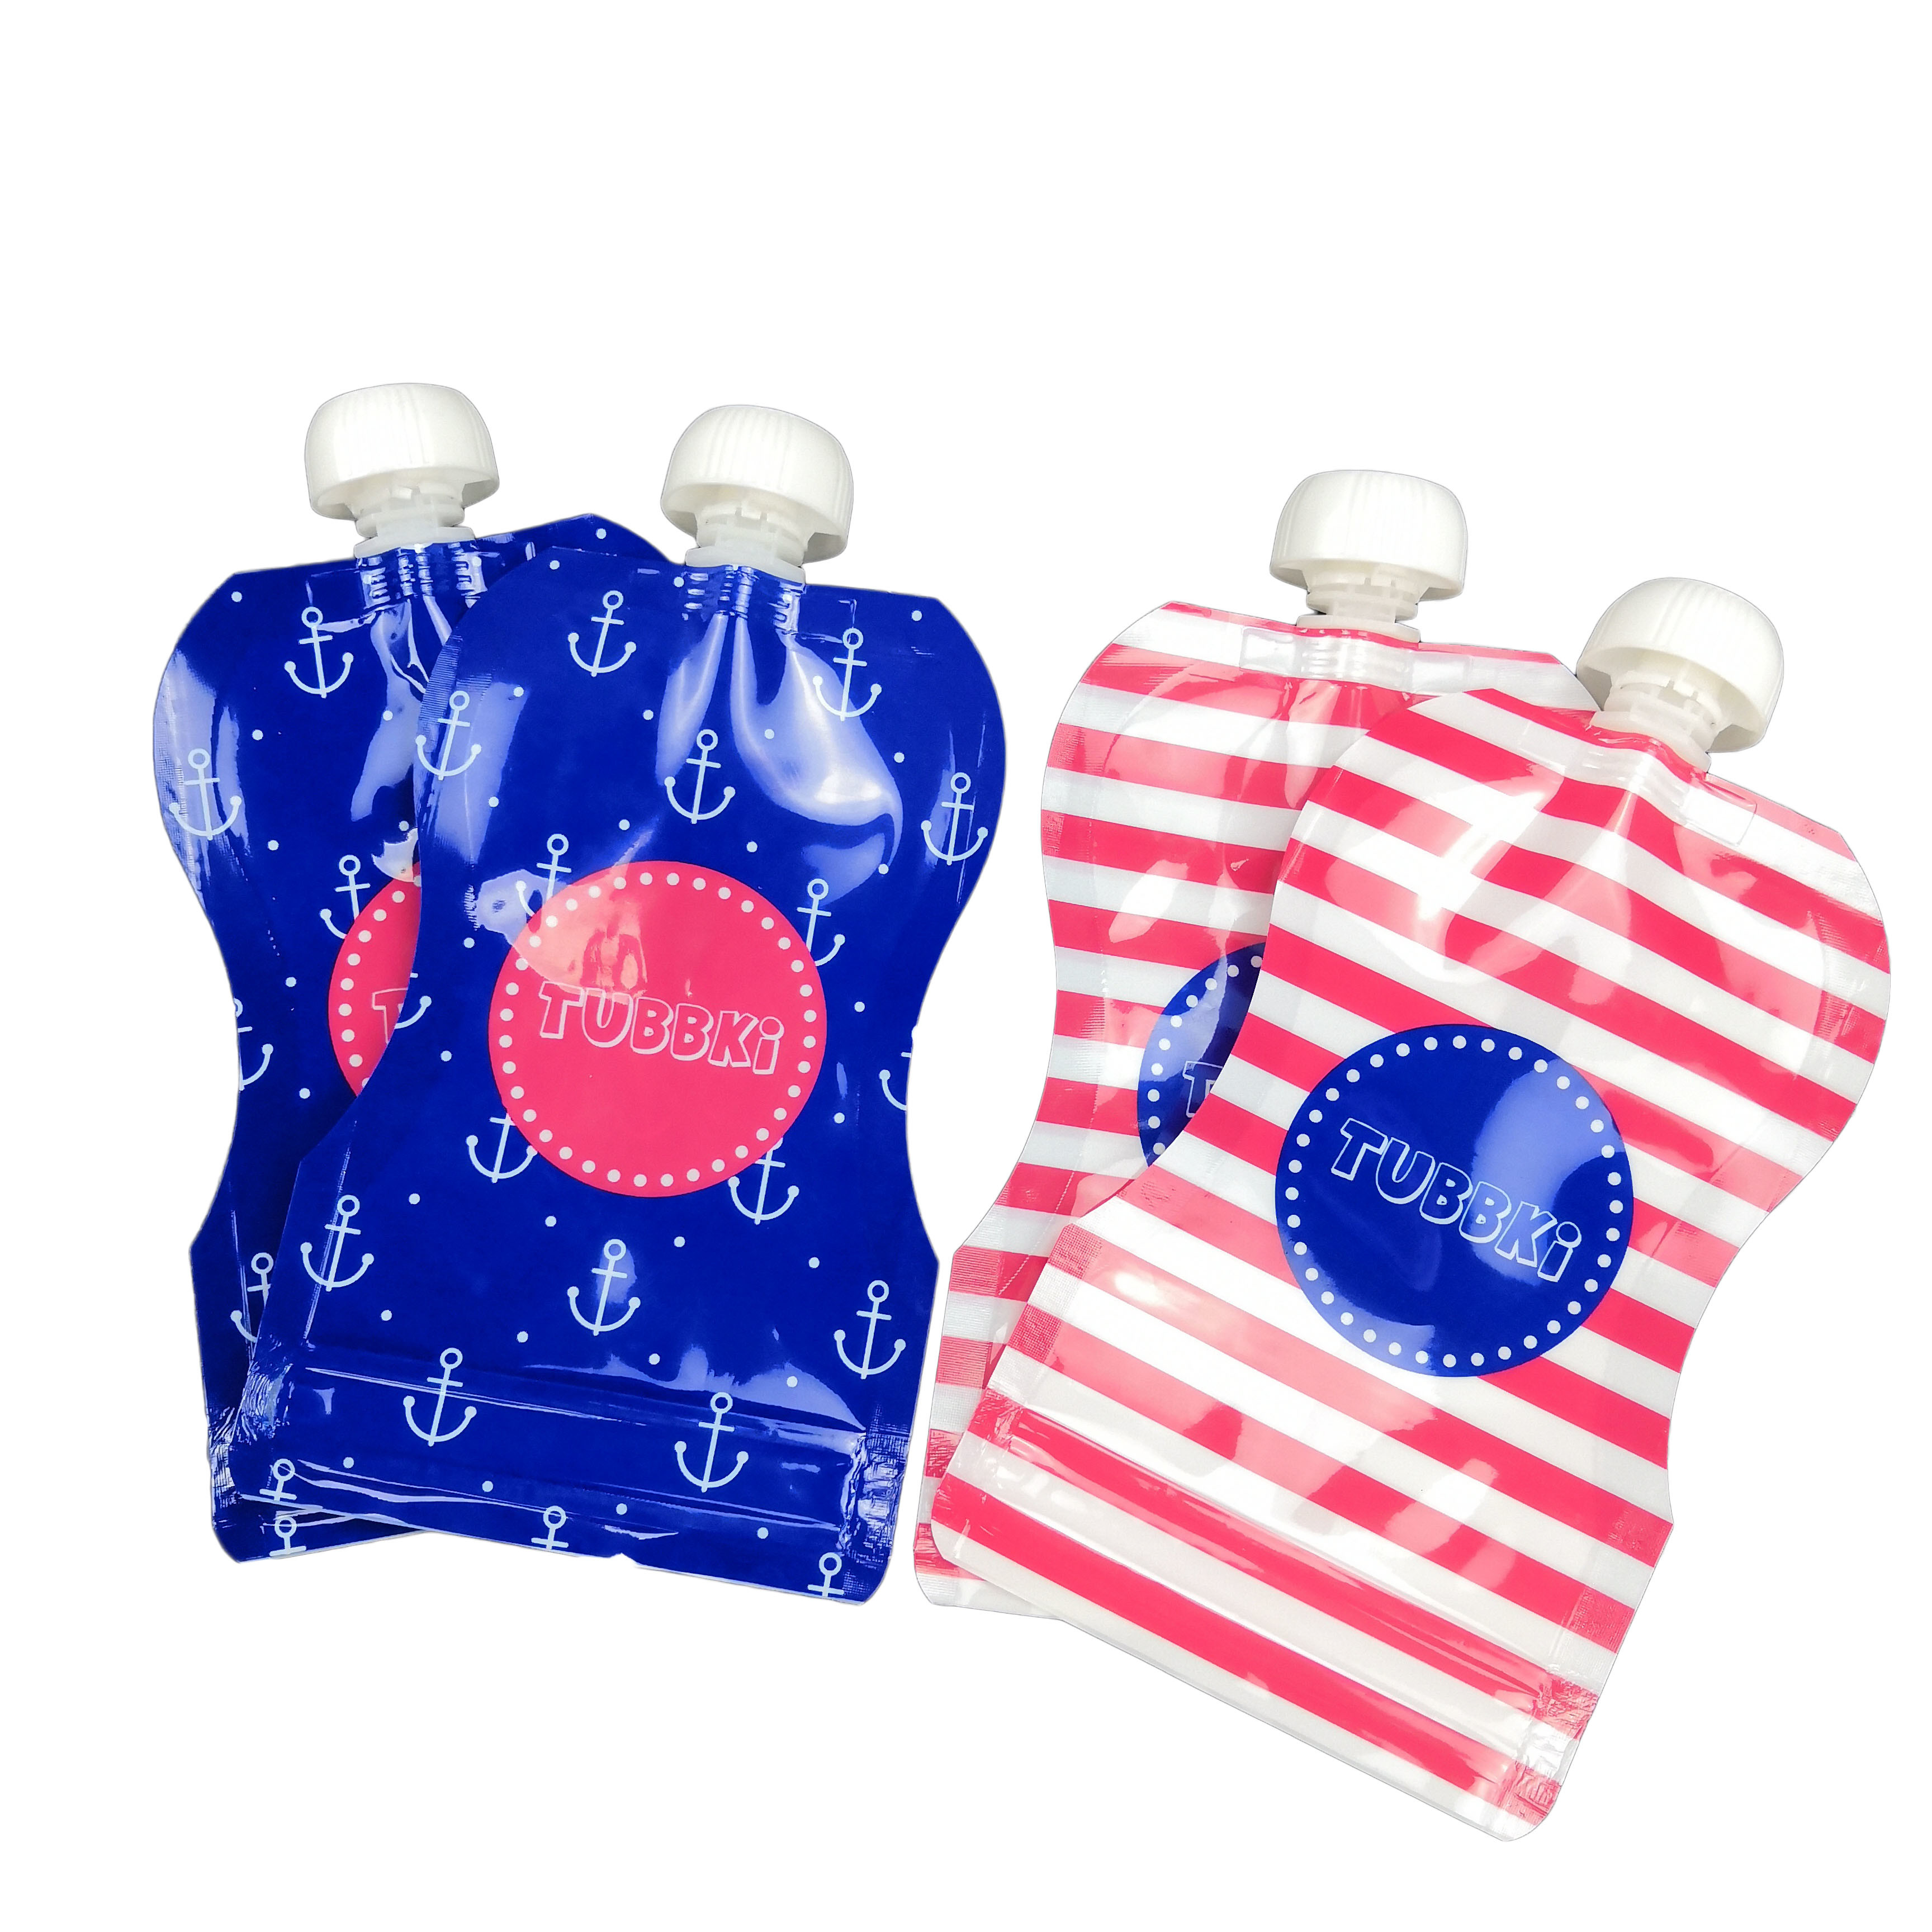 بسته بندی کیسه های مواد غذایی قابل استفاده مجدد بسته بندی شده از مواد چند لایه مواد CMYK رنگ نوشیدنی